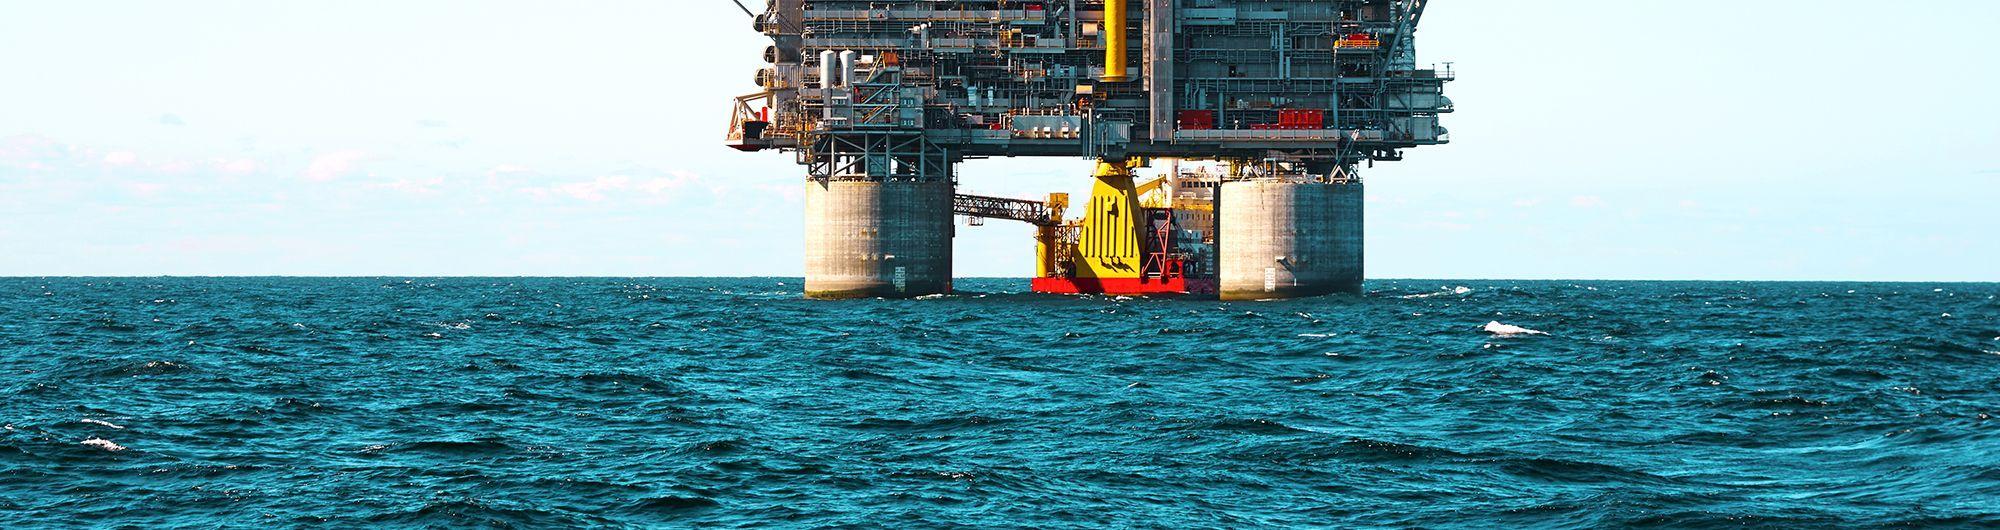 plataforma de petróleo sob o mar 